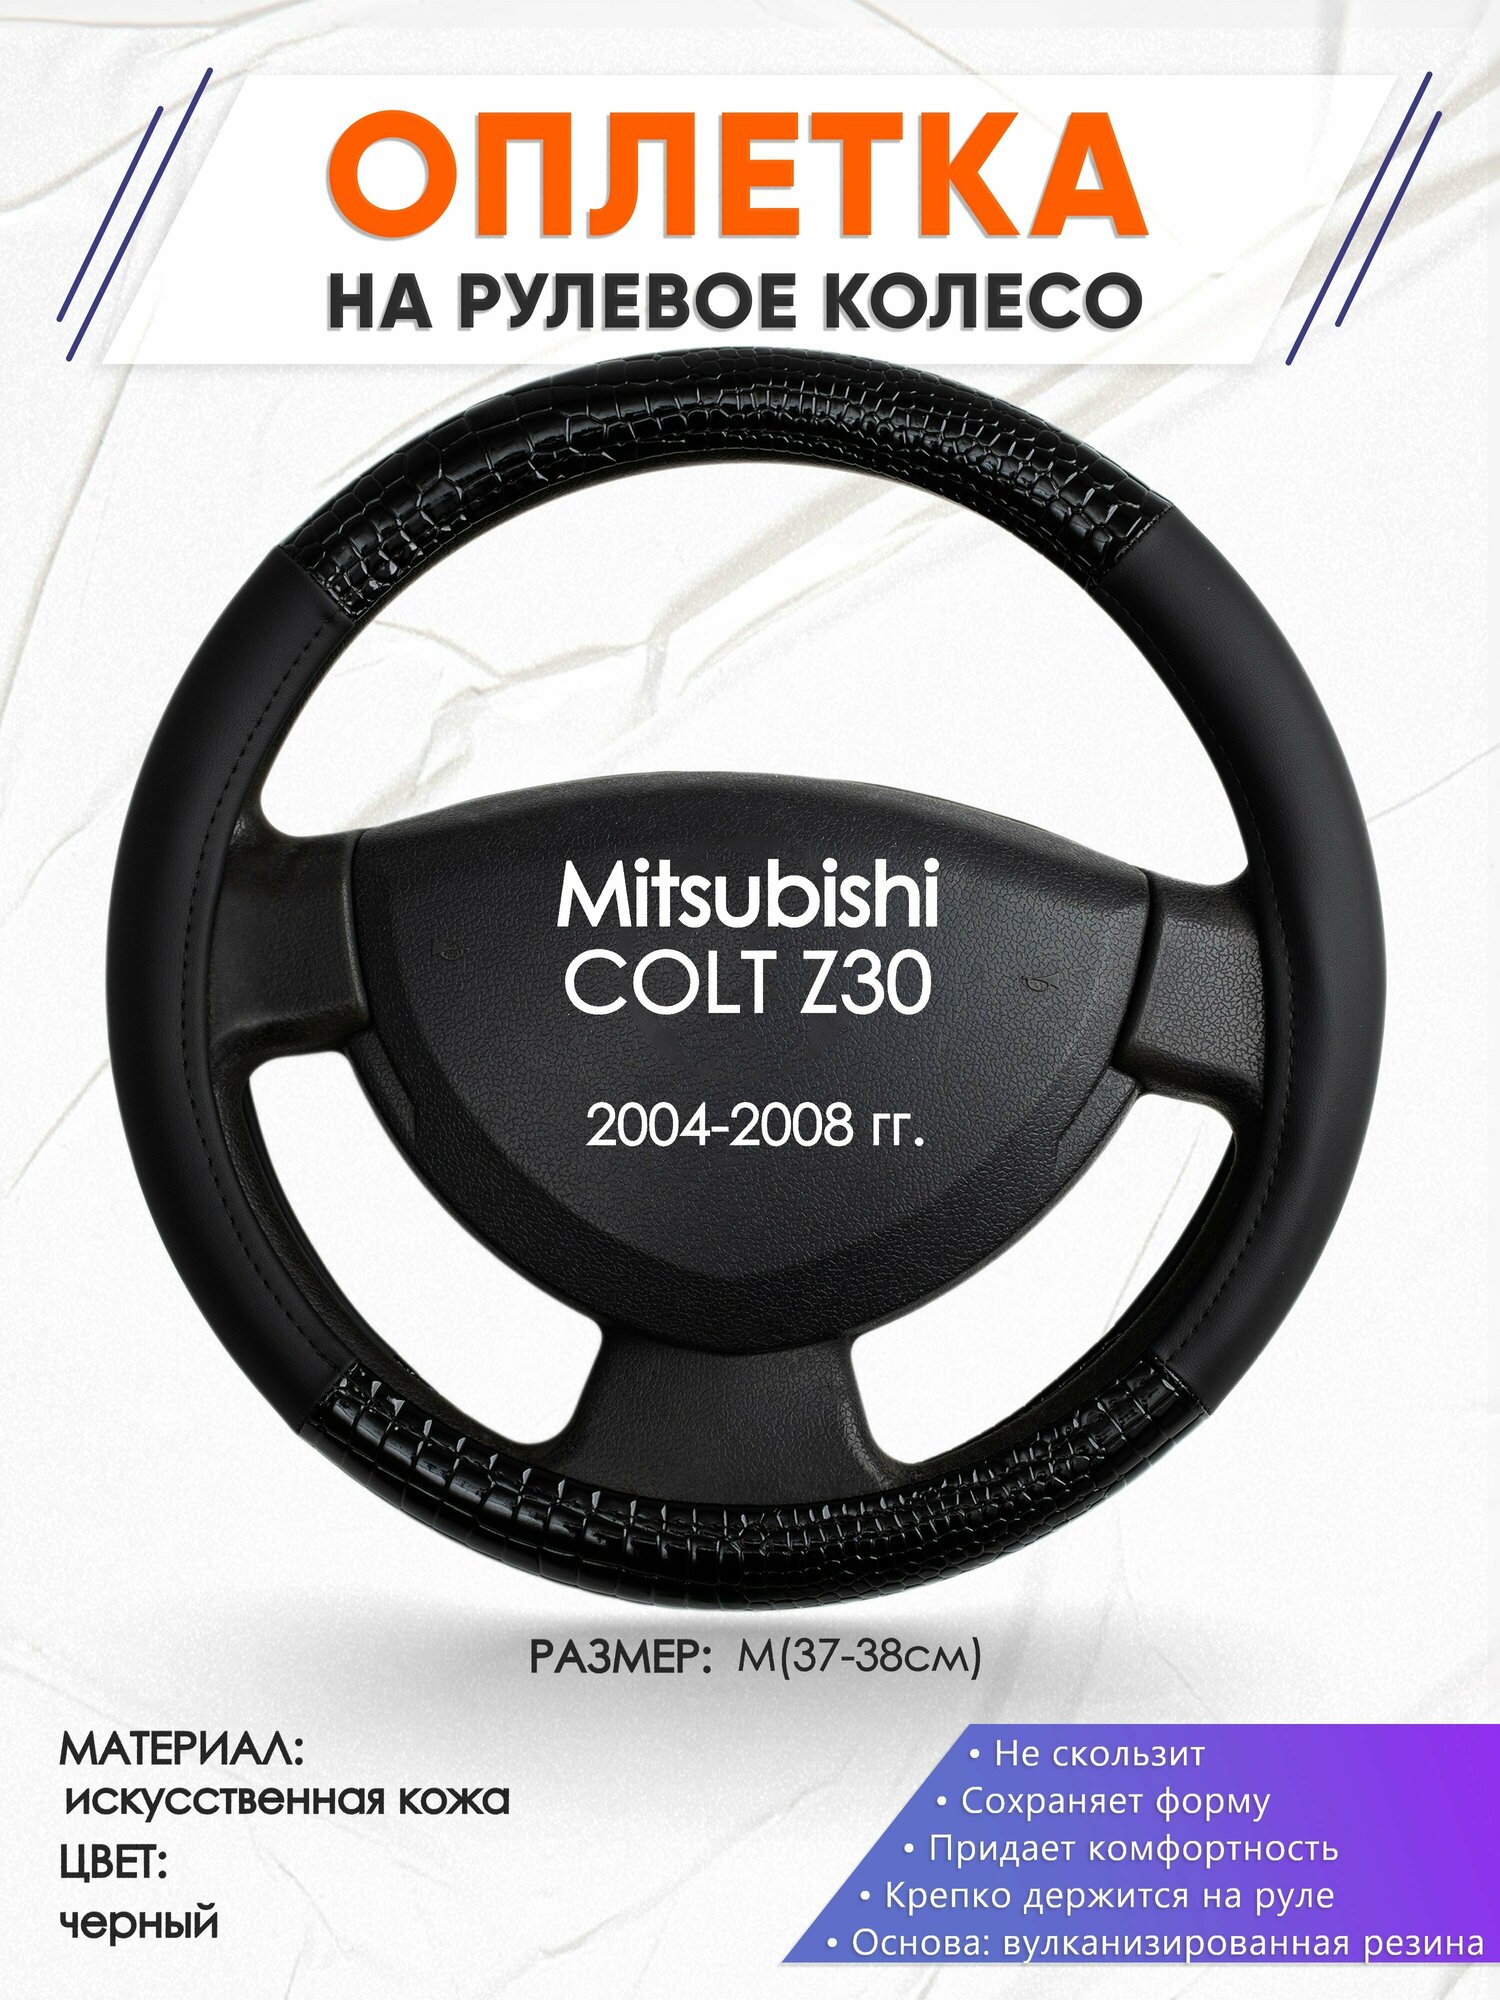 Оплетка наруль для Mitsubishi COLT Z30(Мицубиси Кольт) 2004-2008 годов выпуска, размер M(37-38см), Искусственная кожа 83